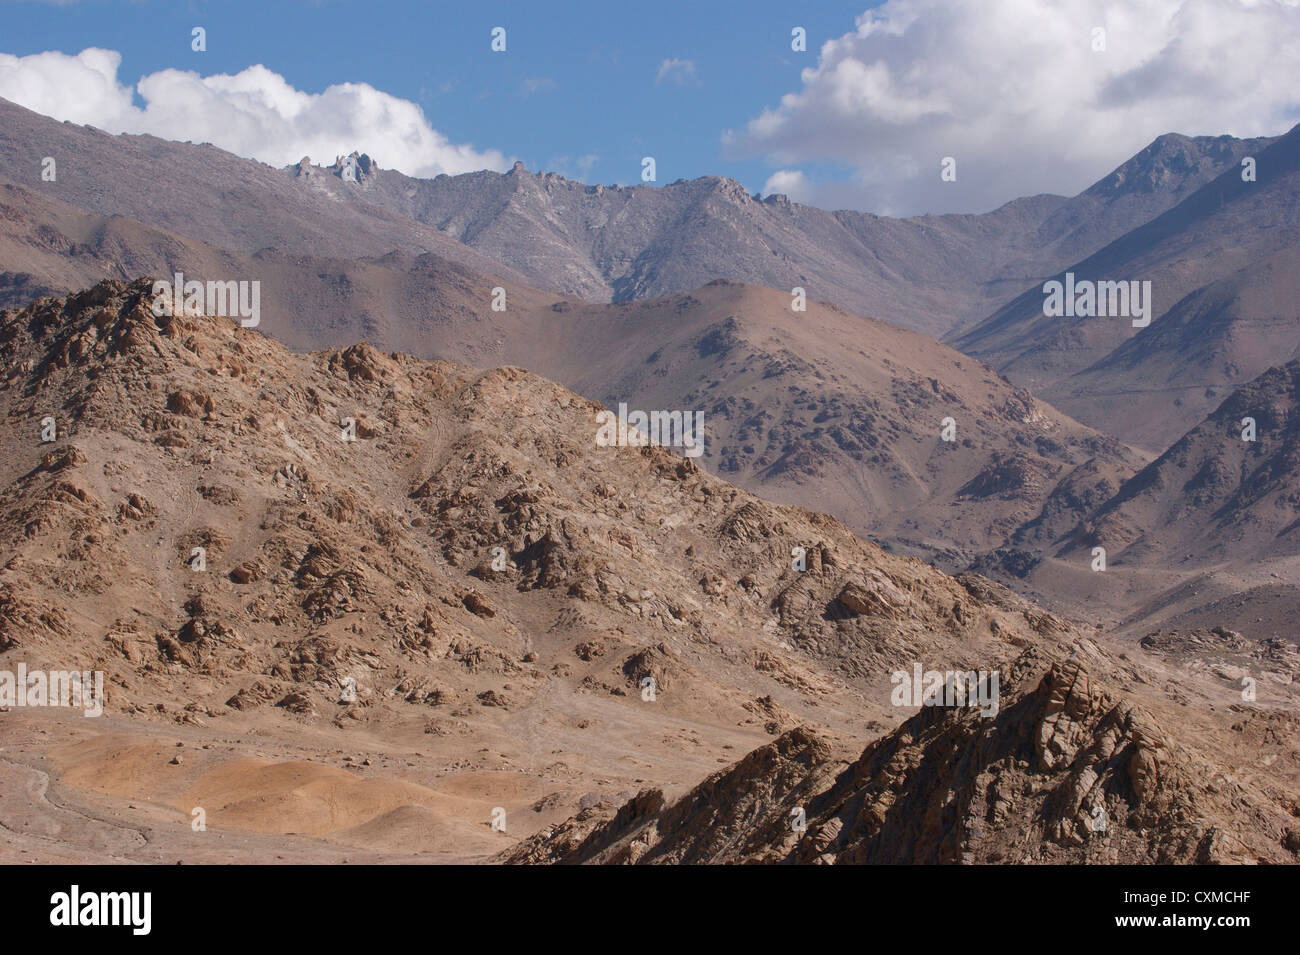 ladakh range, landscape near leh, jammu and kashmir, india Stock Photo